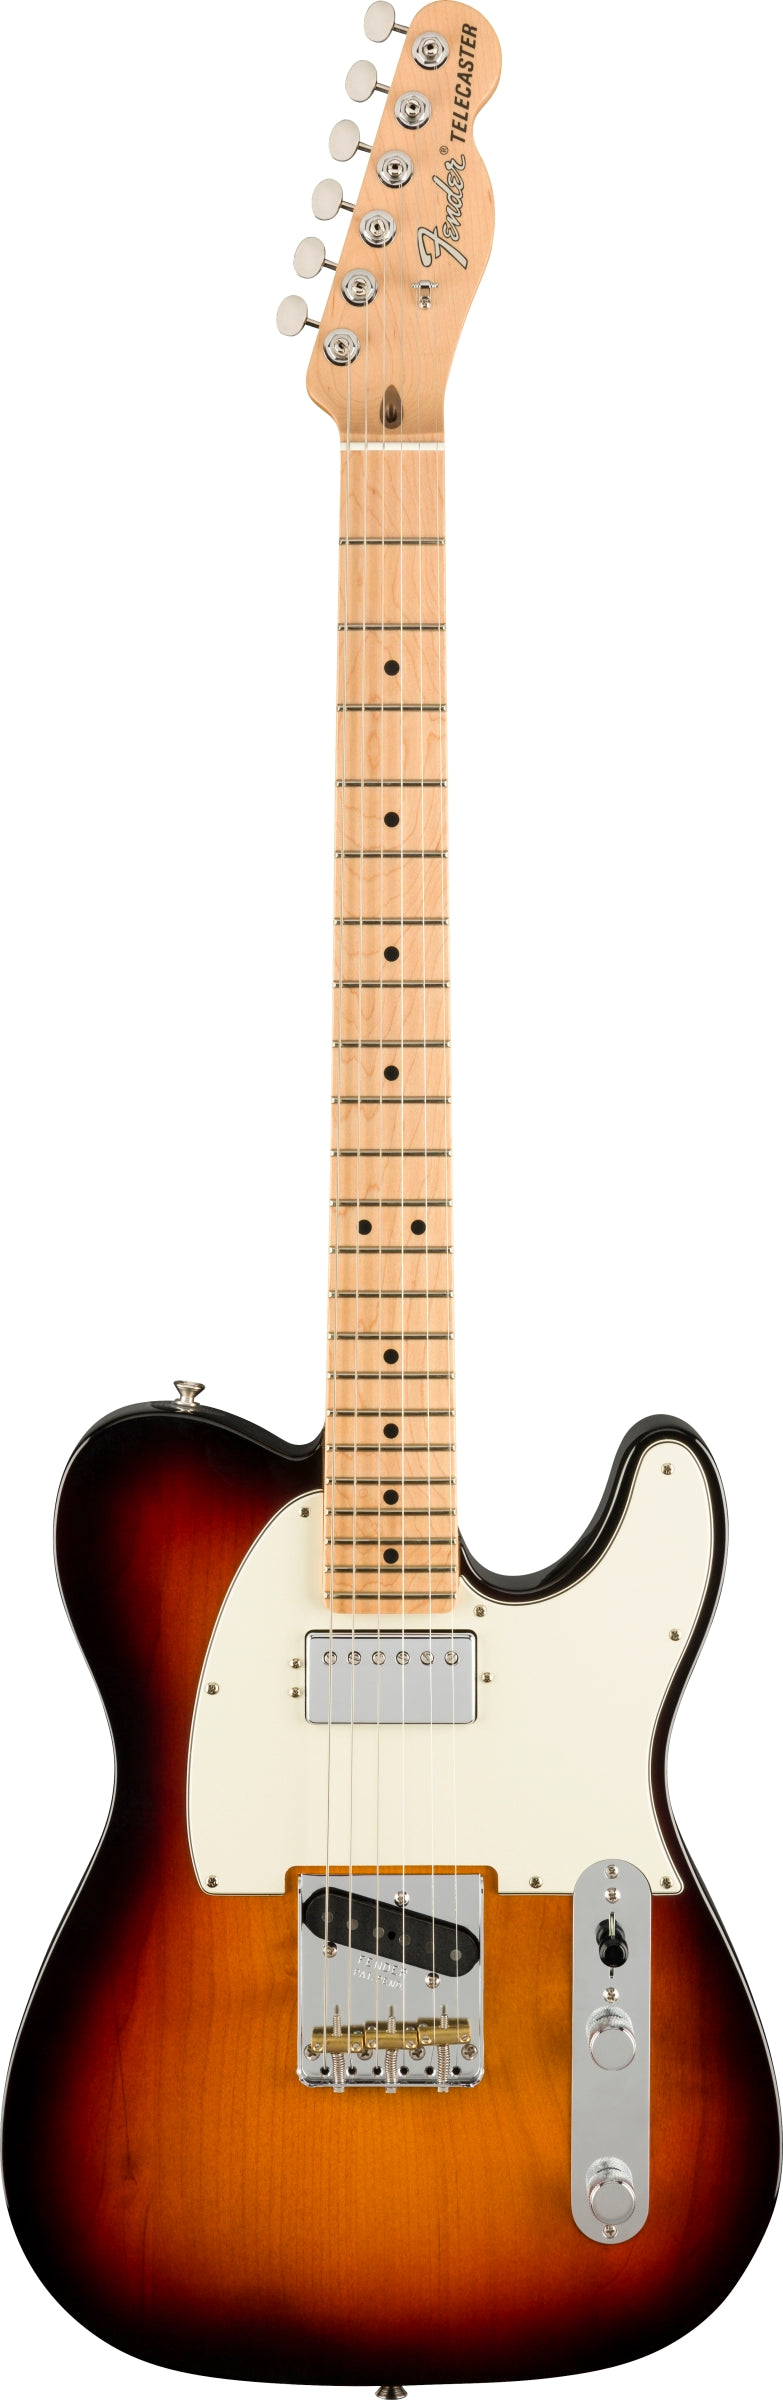 Fender American Performer Telecaster Hum, Maple Neck - 3 Tone Sunburst